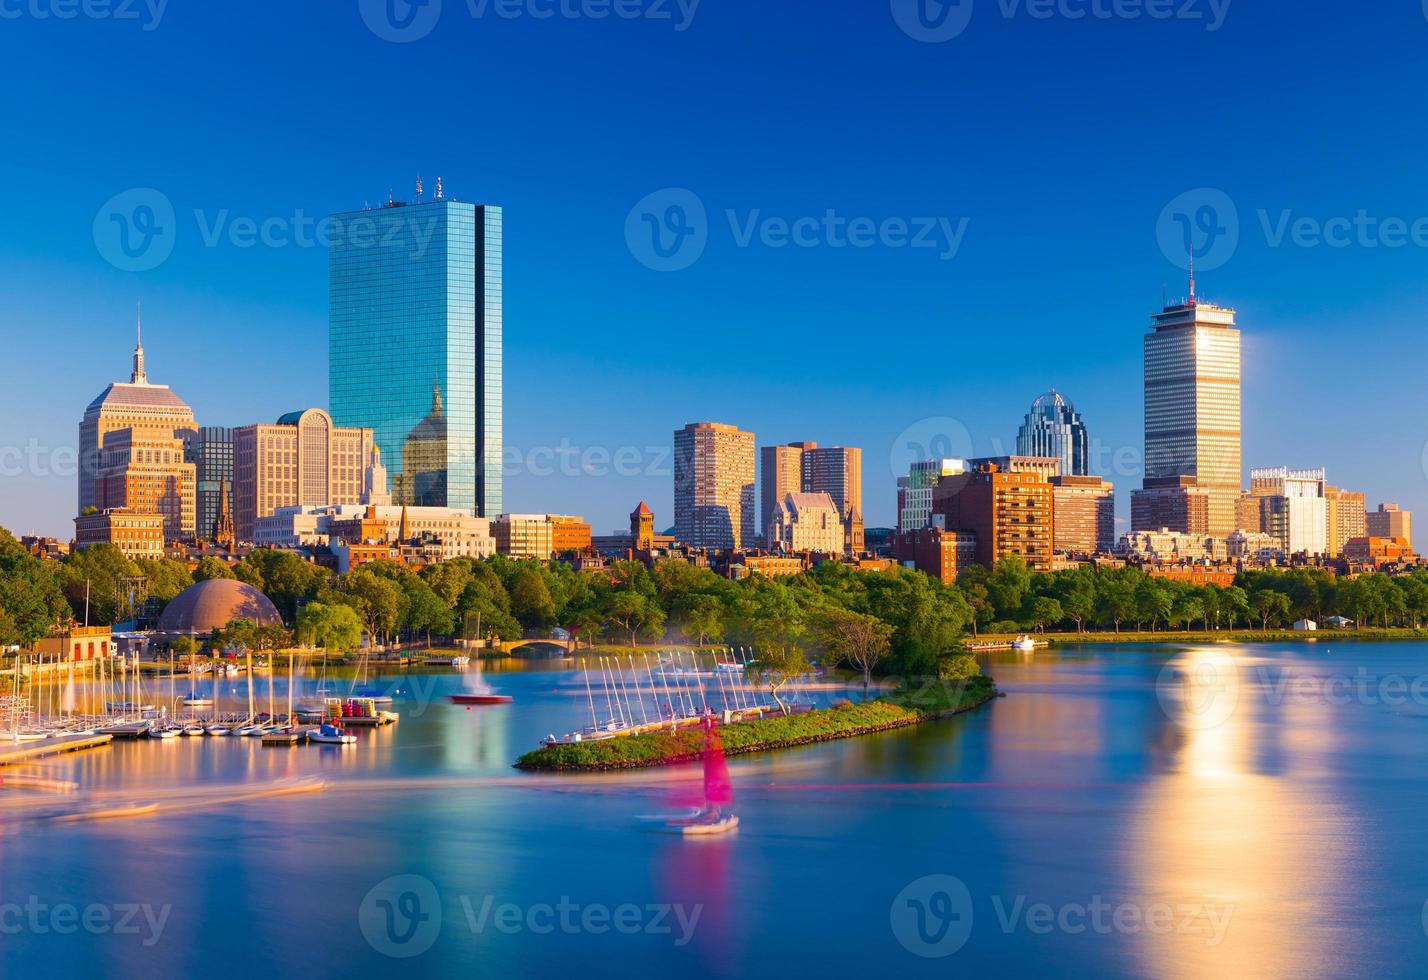 Boston-Skyline am Abend. Stadtbild von Back Bay Boston. Wolkenkratzer und Bürogebäude spiegeln sich im Wasser des Charles River. foto